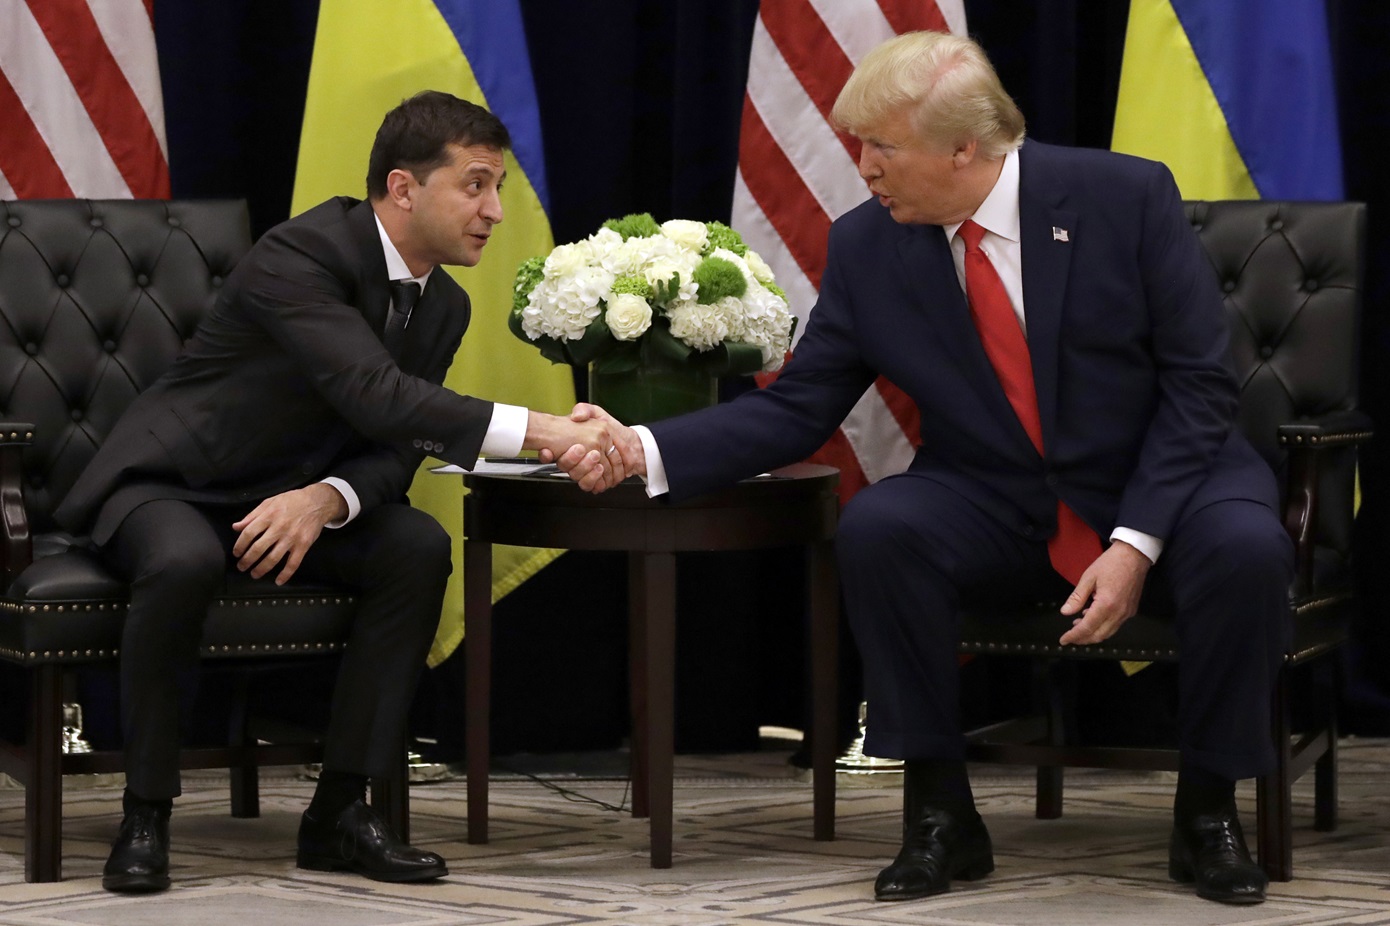 Ο Τραμπ δεσμεύτηκε στον Ζελένσκι να σταματήσει τον πόλεμο Ουκρανίας-Ρωσίας αν εκλεγεί πρόεδρος των ΗΠΑ